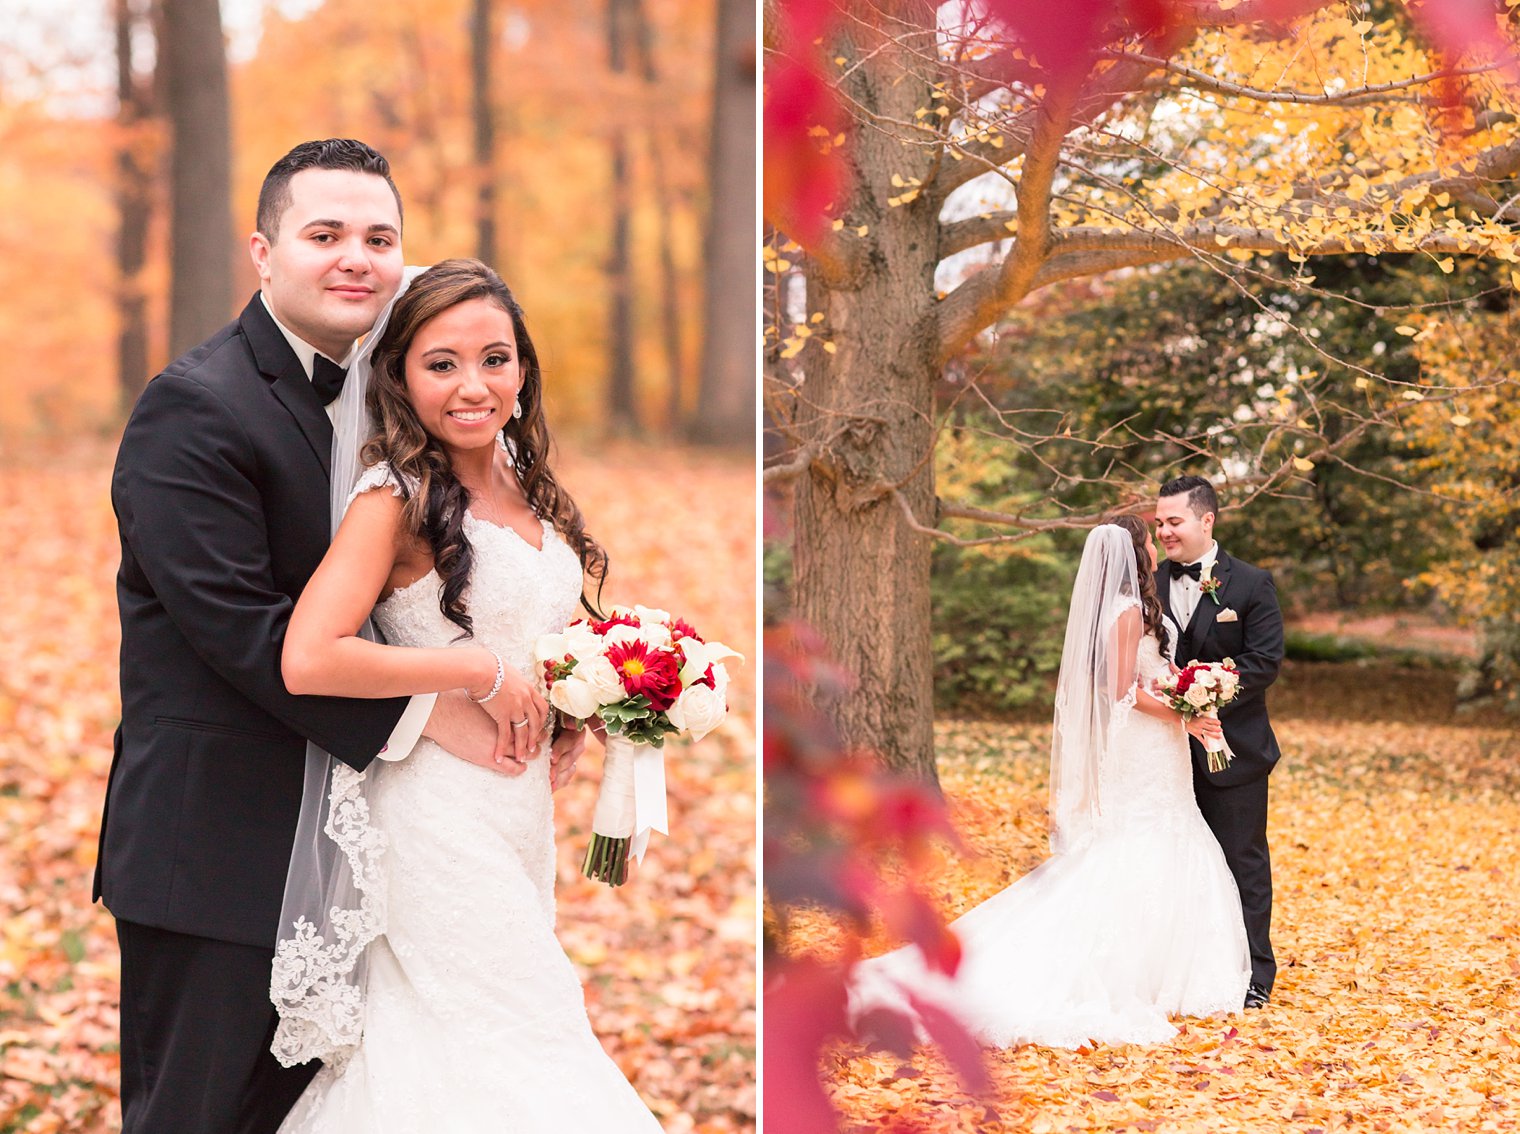 Bride and groom photo at Frelinghuysen Arboretum in Morristown, NJ